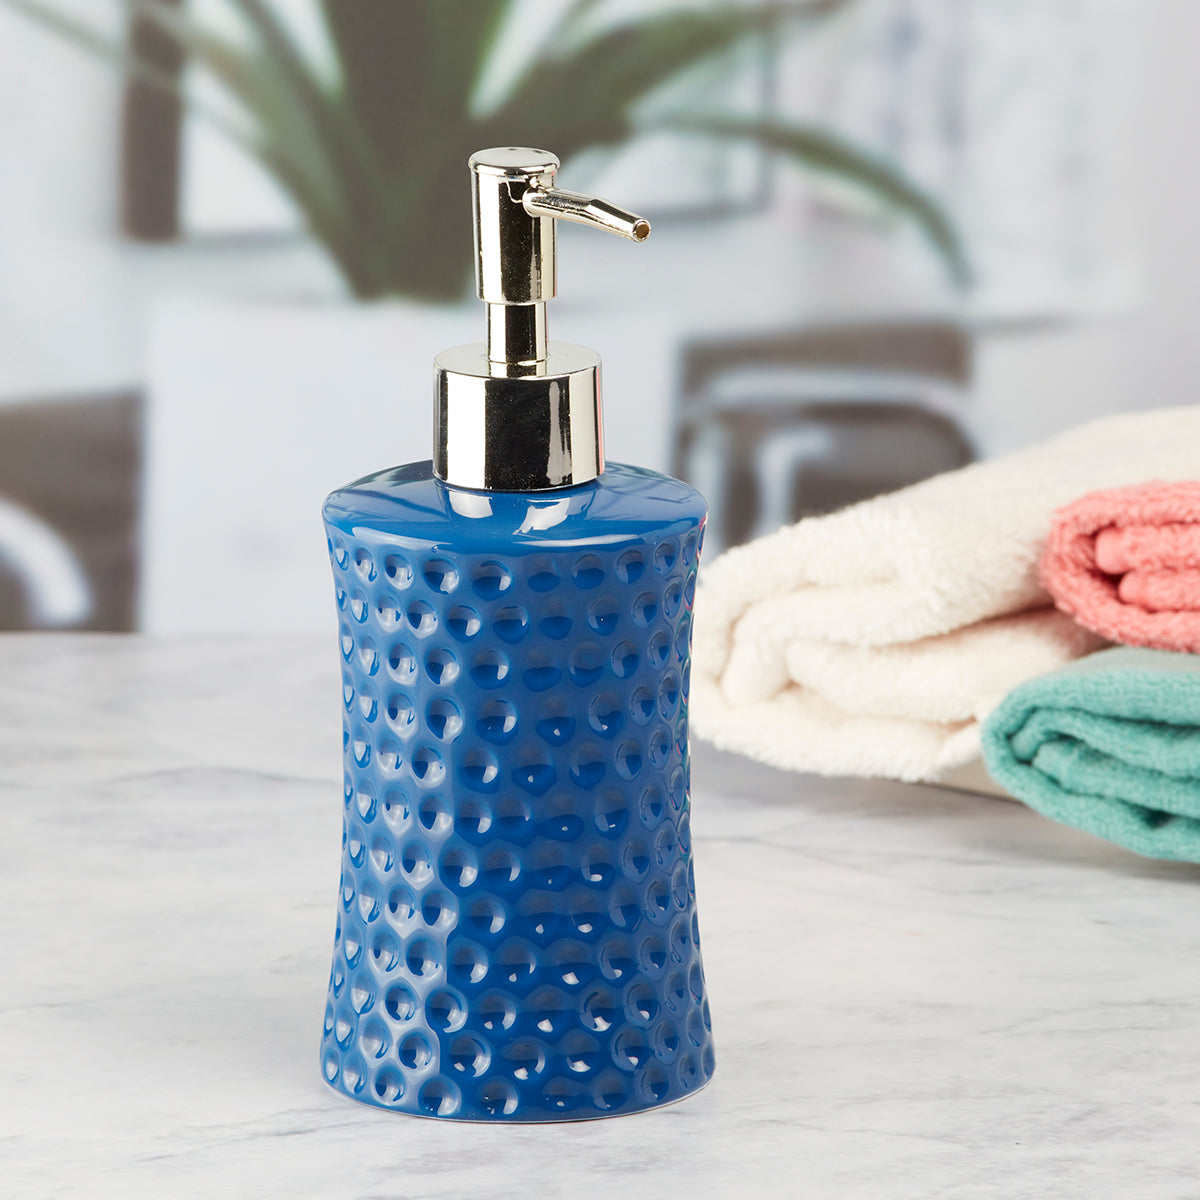 Kookee Ceramic Soap Dispenser for Bathroom handwash, refillable pump bottle for Kitchen hand wash basin, Set of 1, Blue (8038)